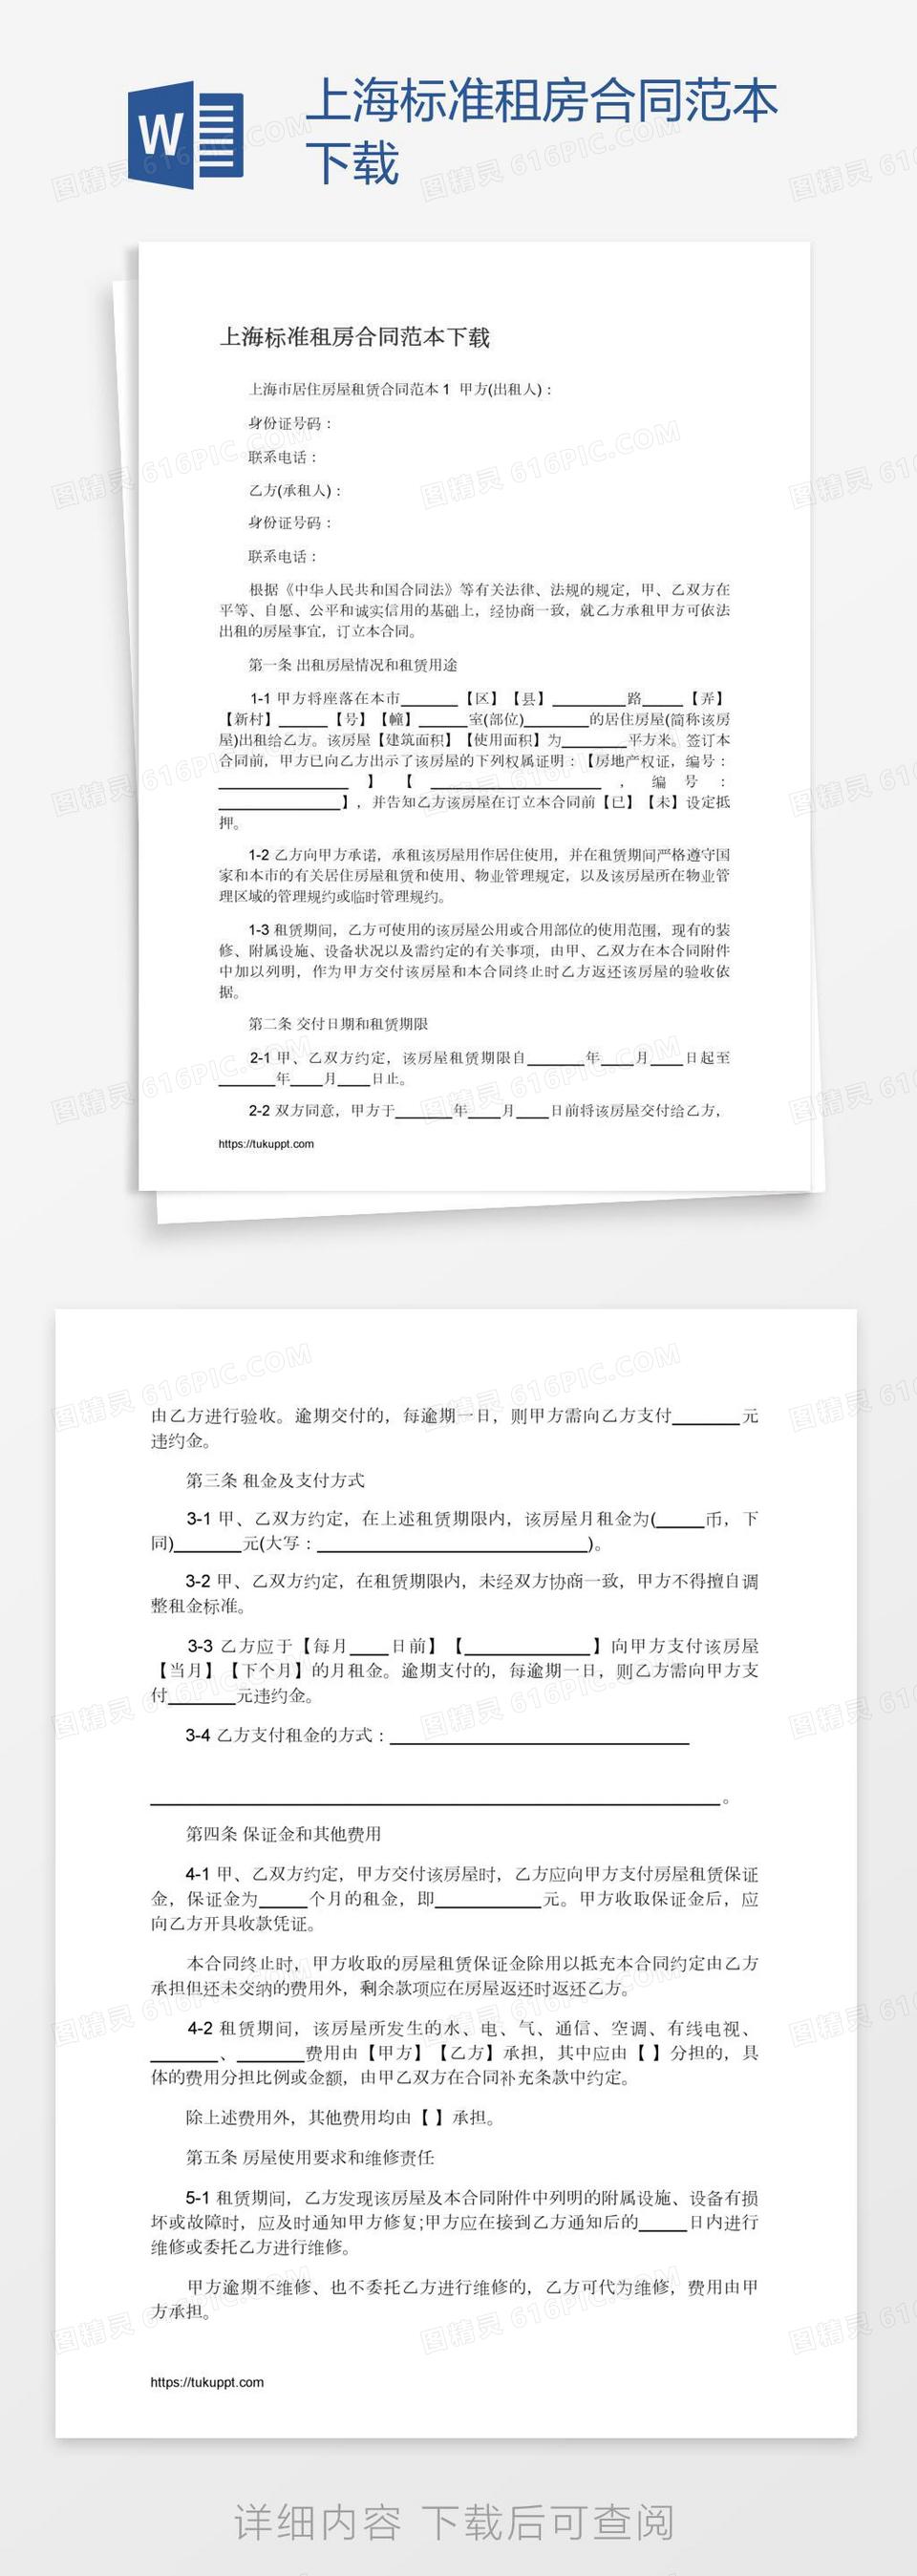 上海标准租房合同范本下载